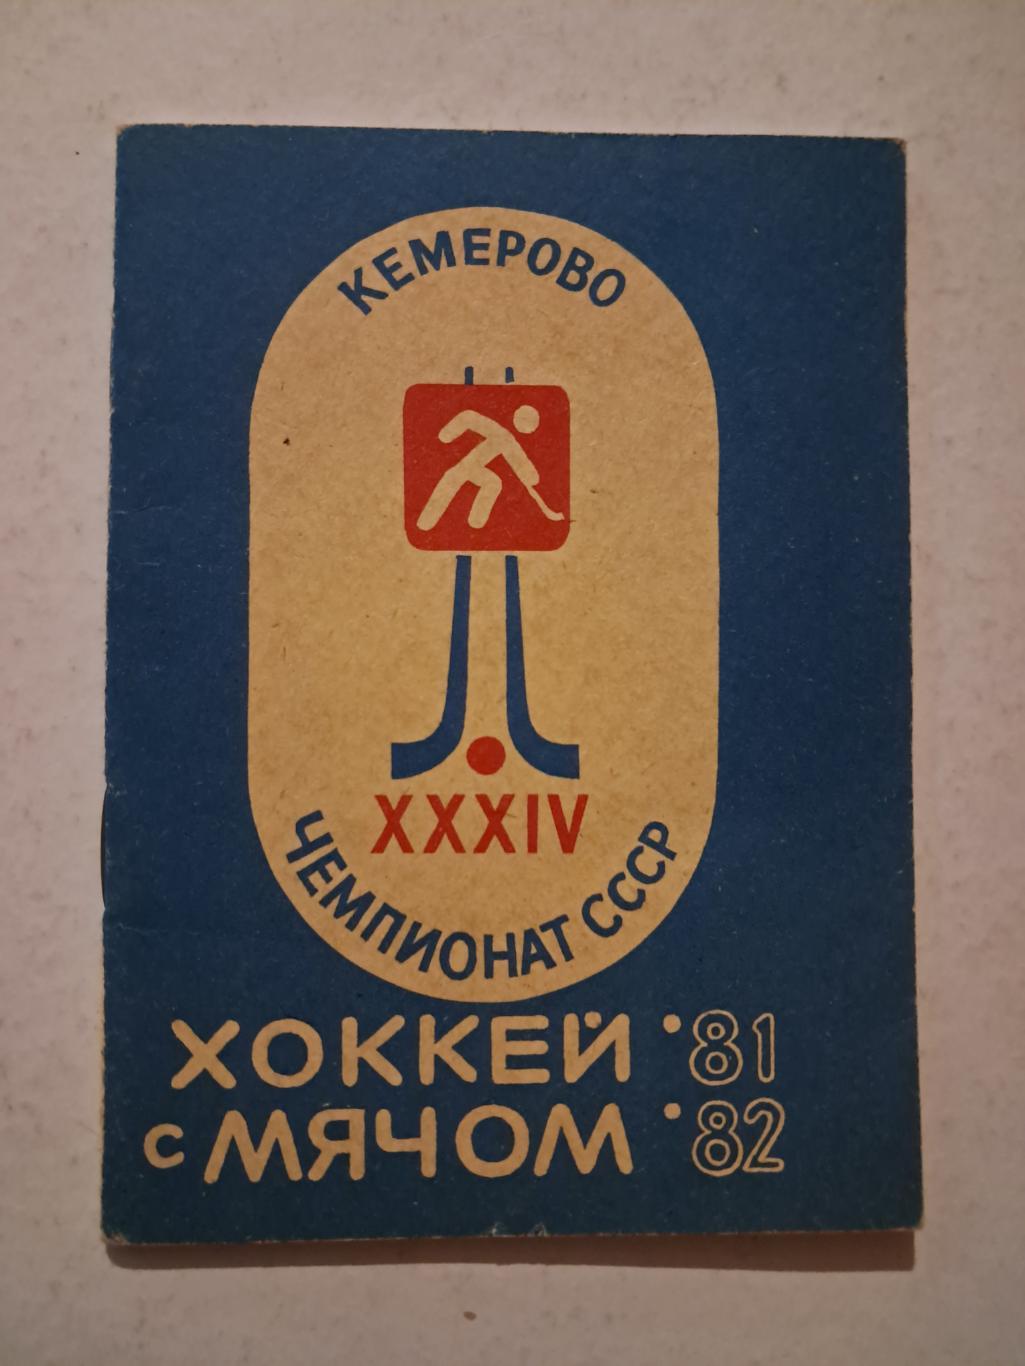 Календарь-справочник по хоккею с мячом Кемерово 1981/82